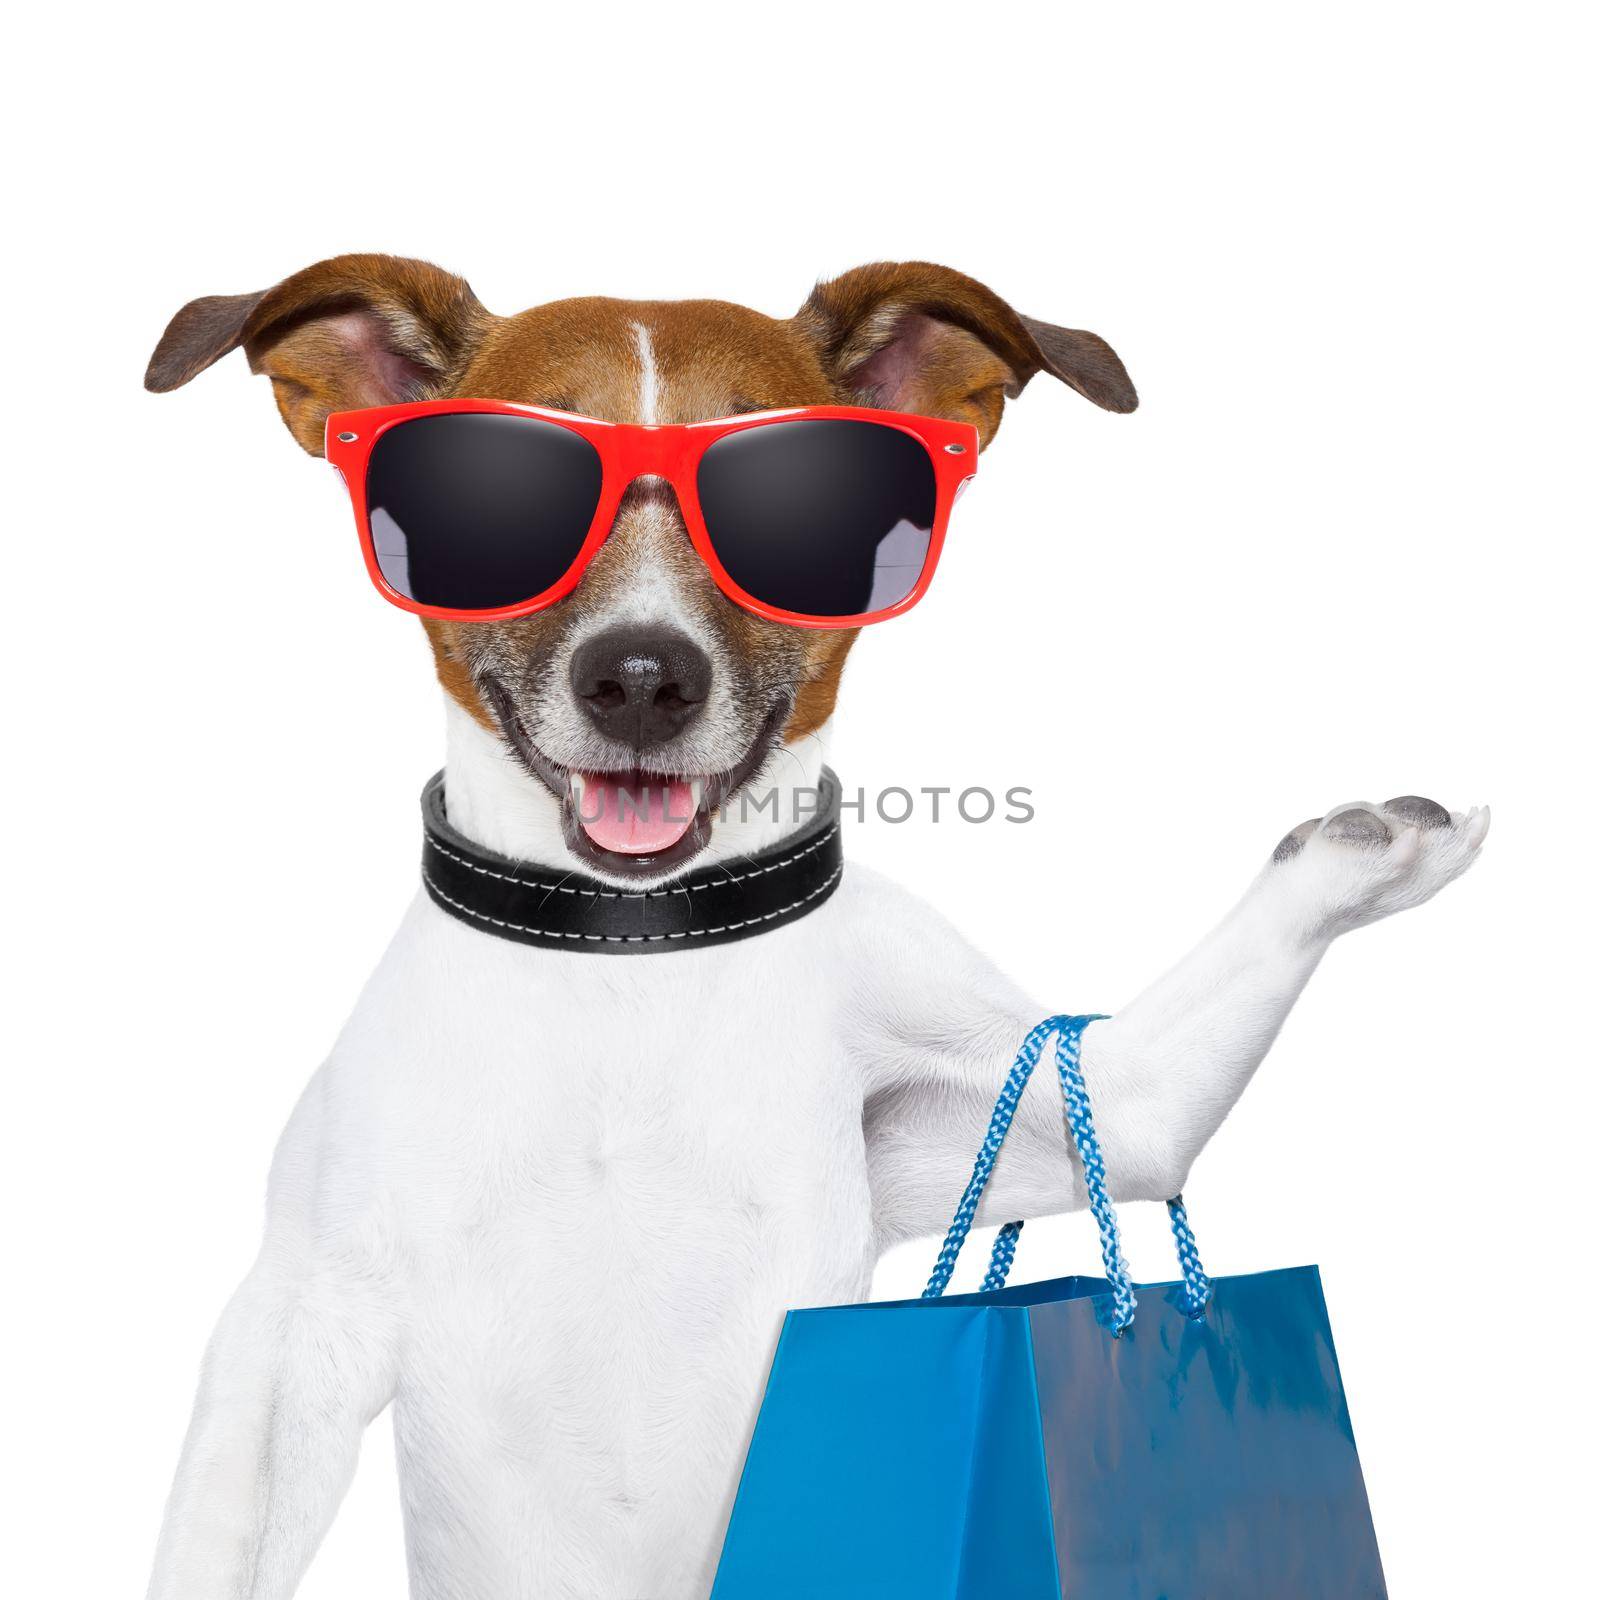 shopping dog by Brosch